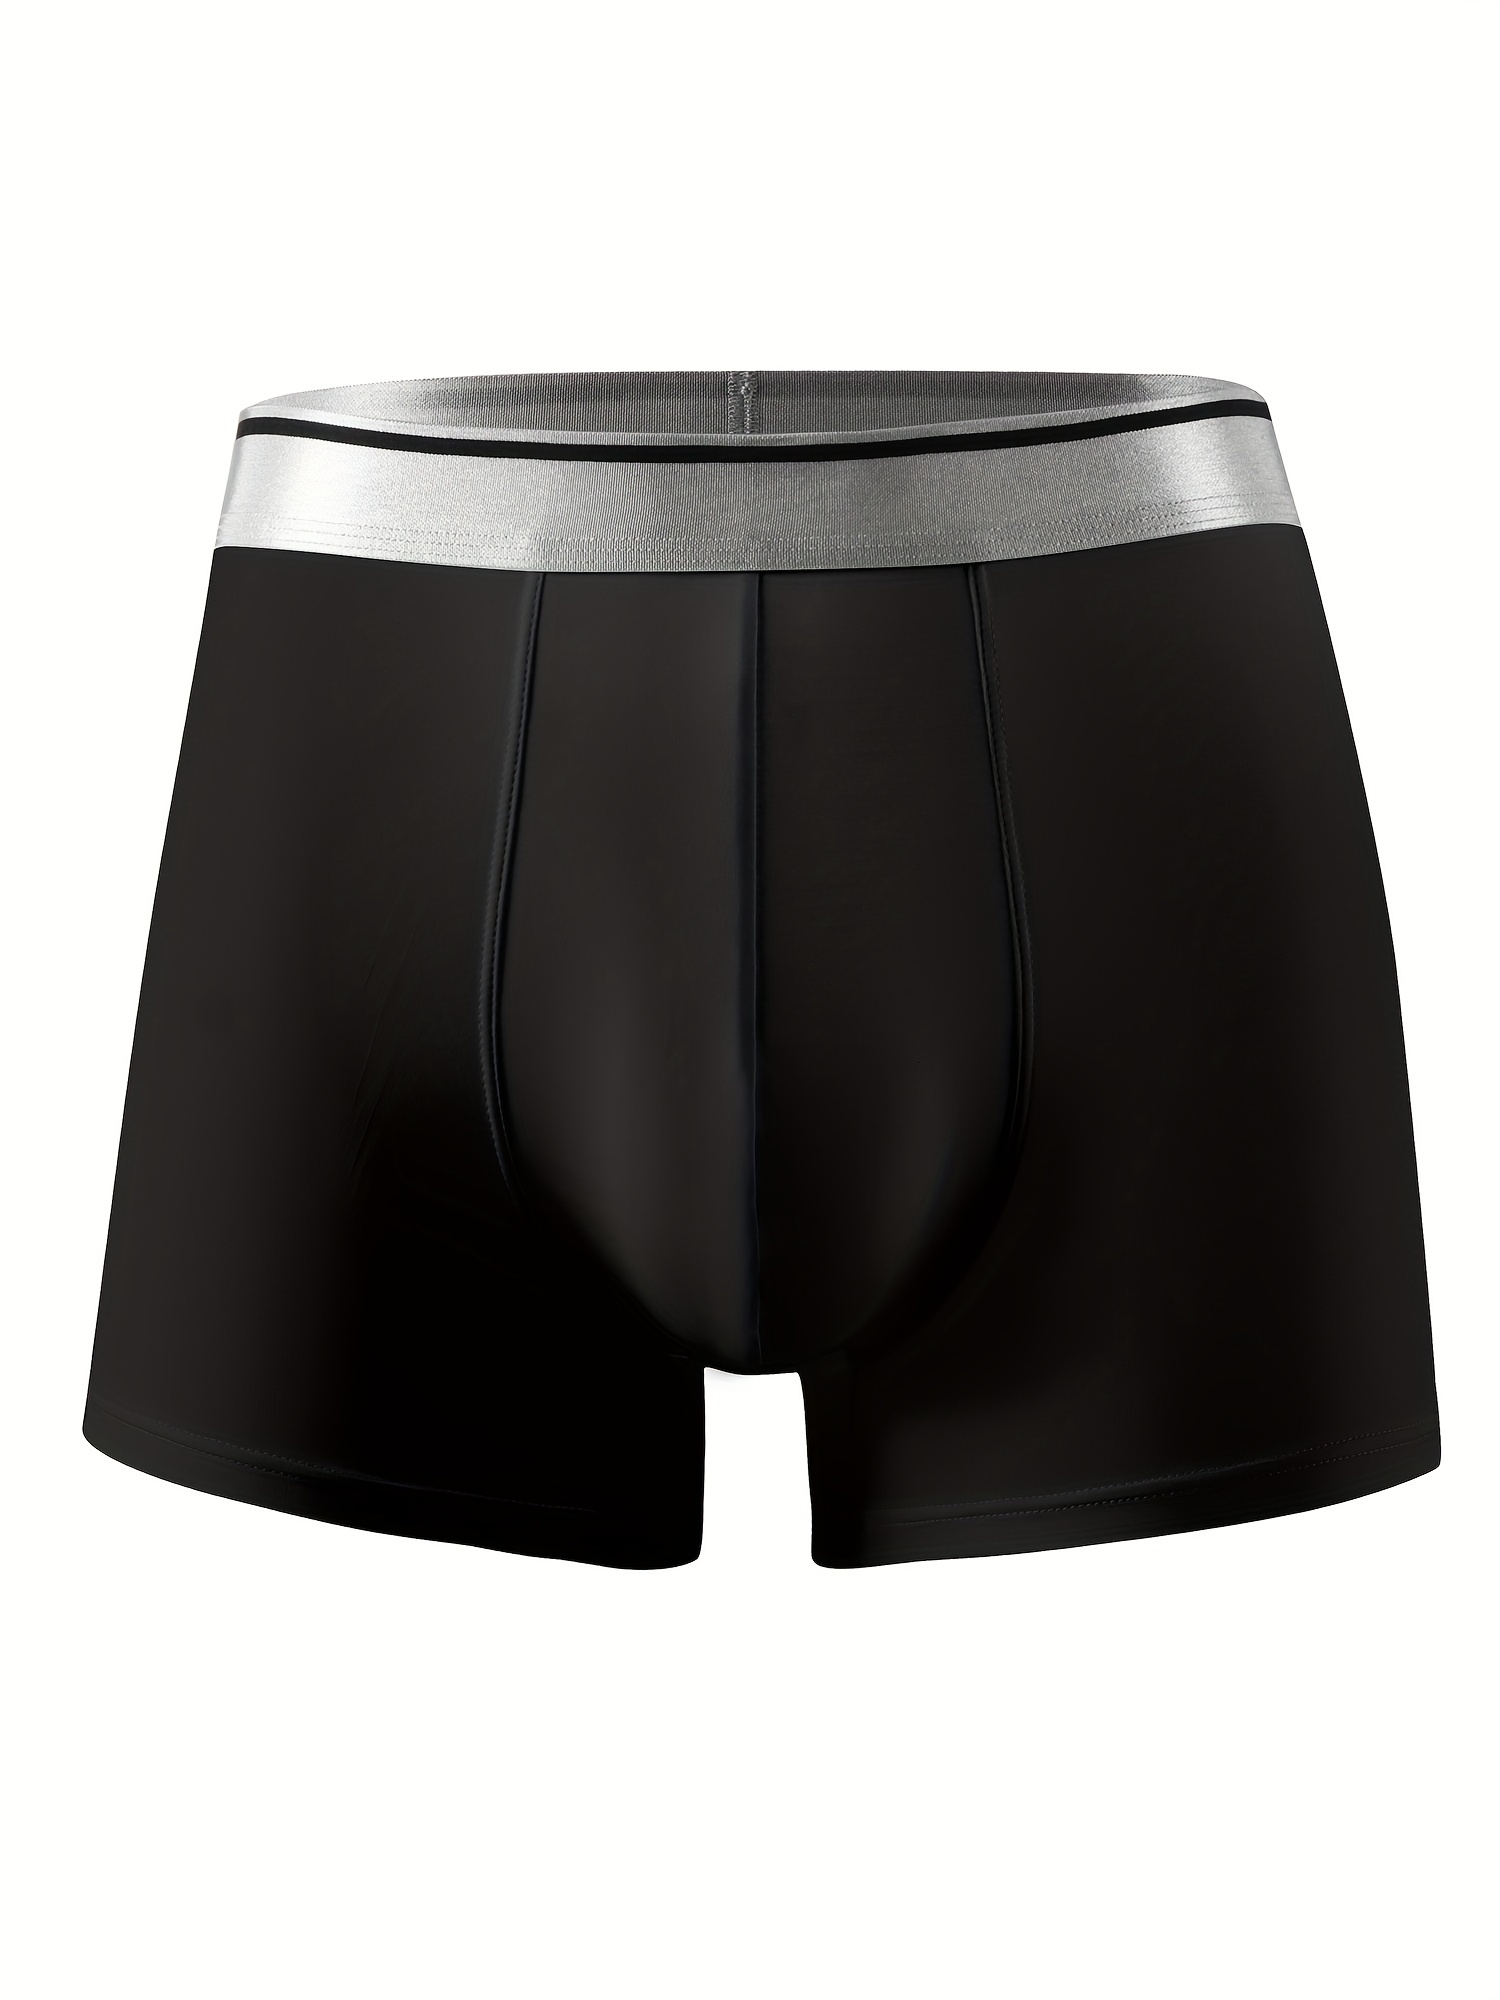 WOCACHI Men's Boxer Briefs Underwear Plus Size Underwear Boxer